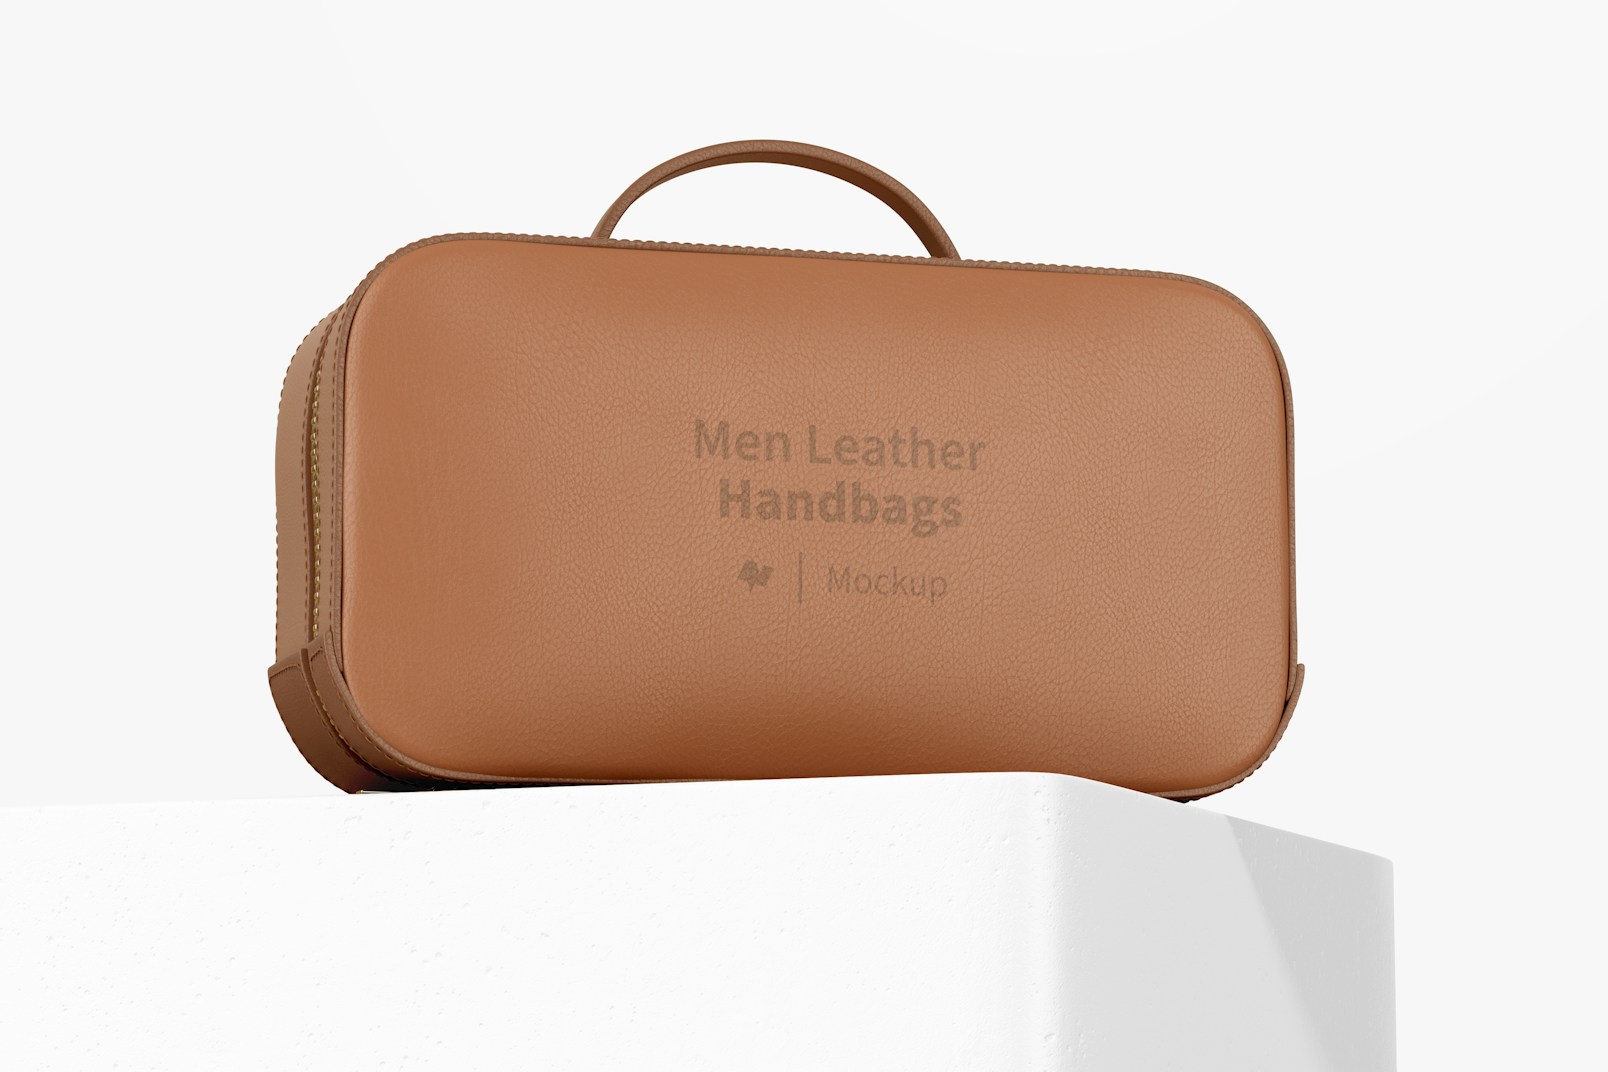 Men Leather Handbag Mockup, Low Angle View